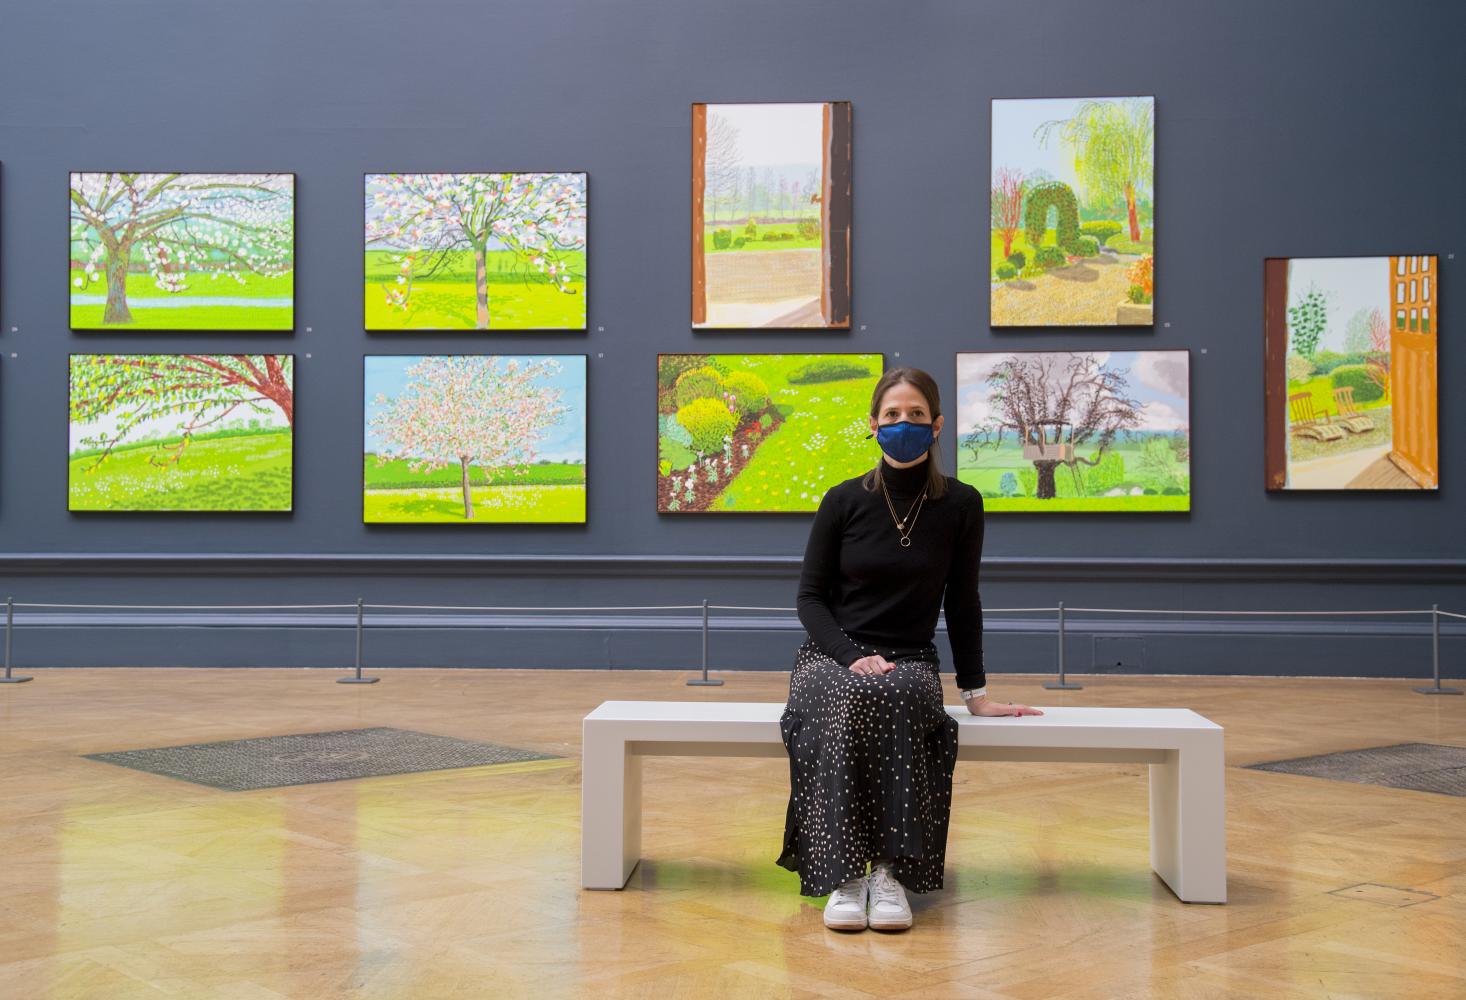 Blick in die Ausstellung "David Hockney. The Arrival of Spring, Normandy, 2020", eine von zwei neuen Ausstellungen in der Royal Academy in London